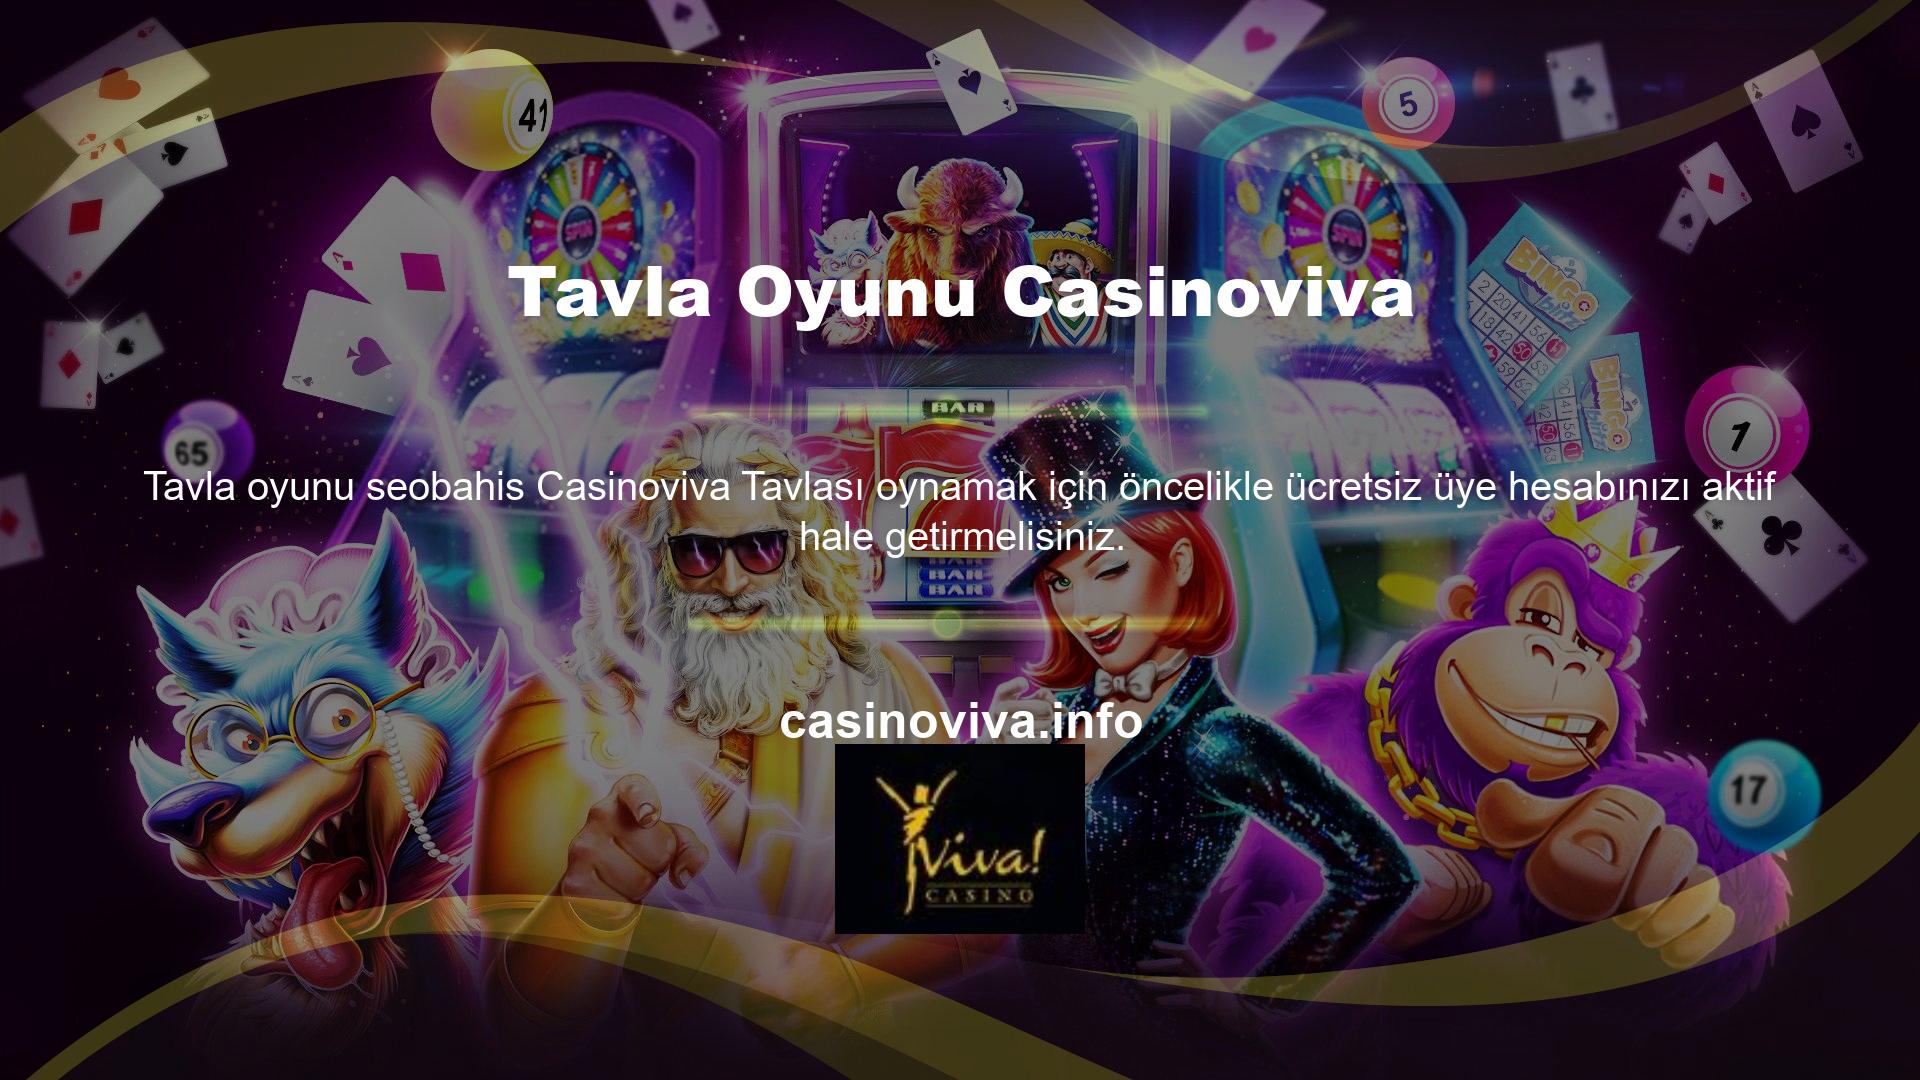 Casinoviva ücretsiz üyeliğine kaydolduktan sonra tavla oyunlarına olan ilginizi artırmak için doğrudan oyunlar bölümüne erişebilirsiniz